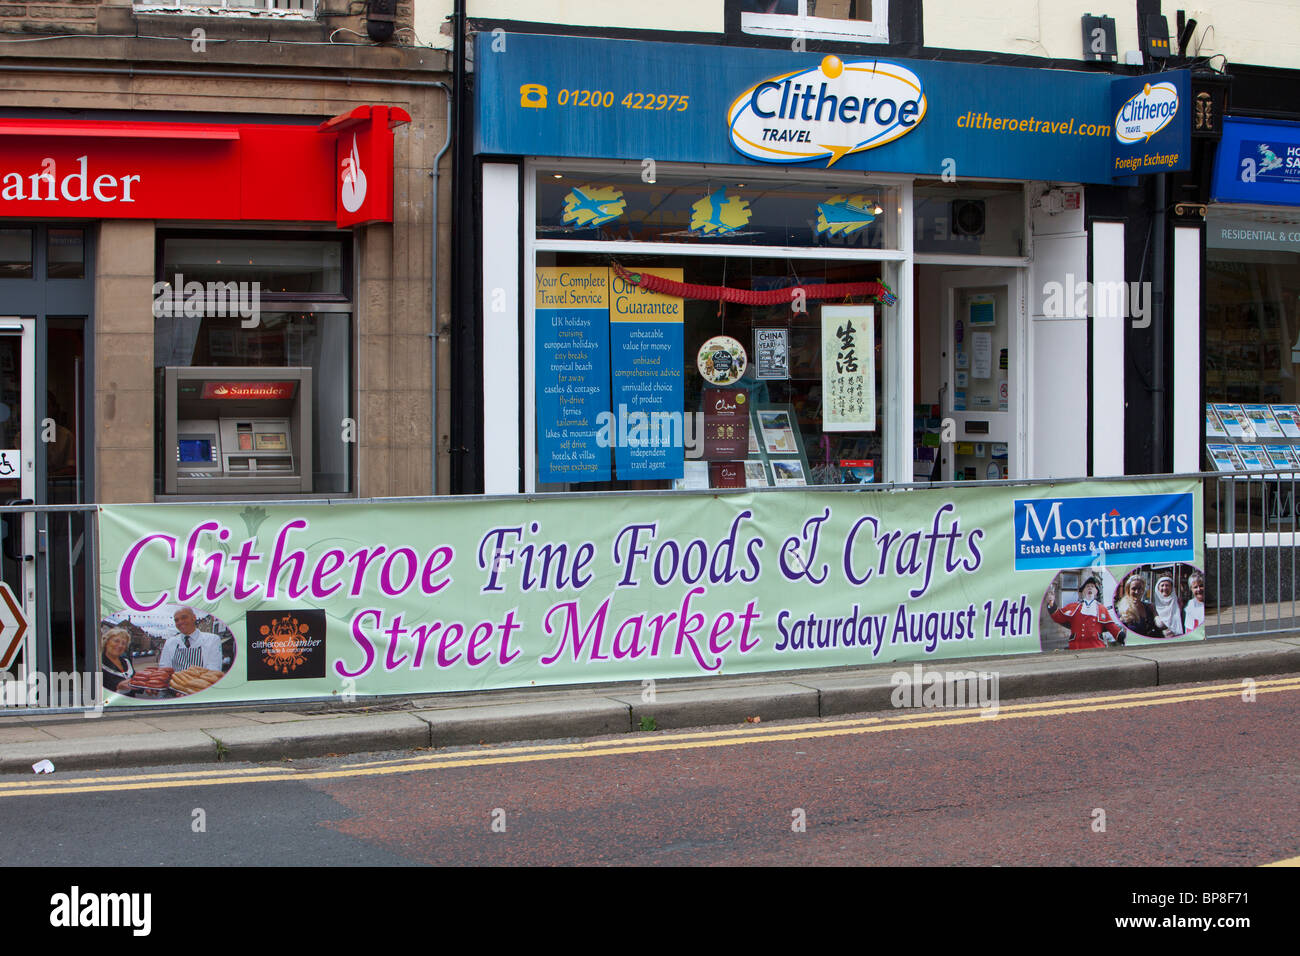 Dans une publicité pour un marché de rue et de l'alimentation juste en Clitheroe, Lancashire, Royaume-Uni. Banque D'Images